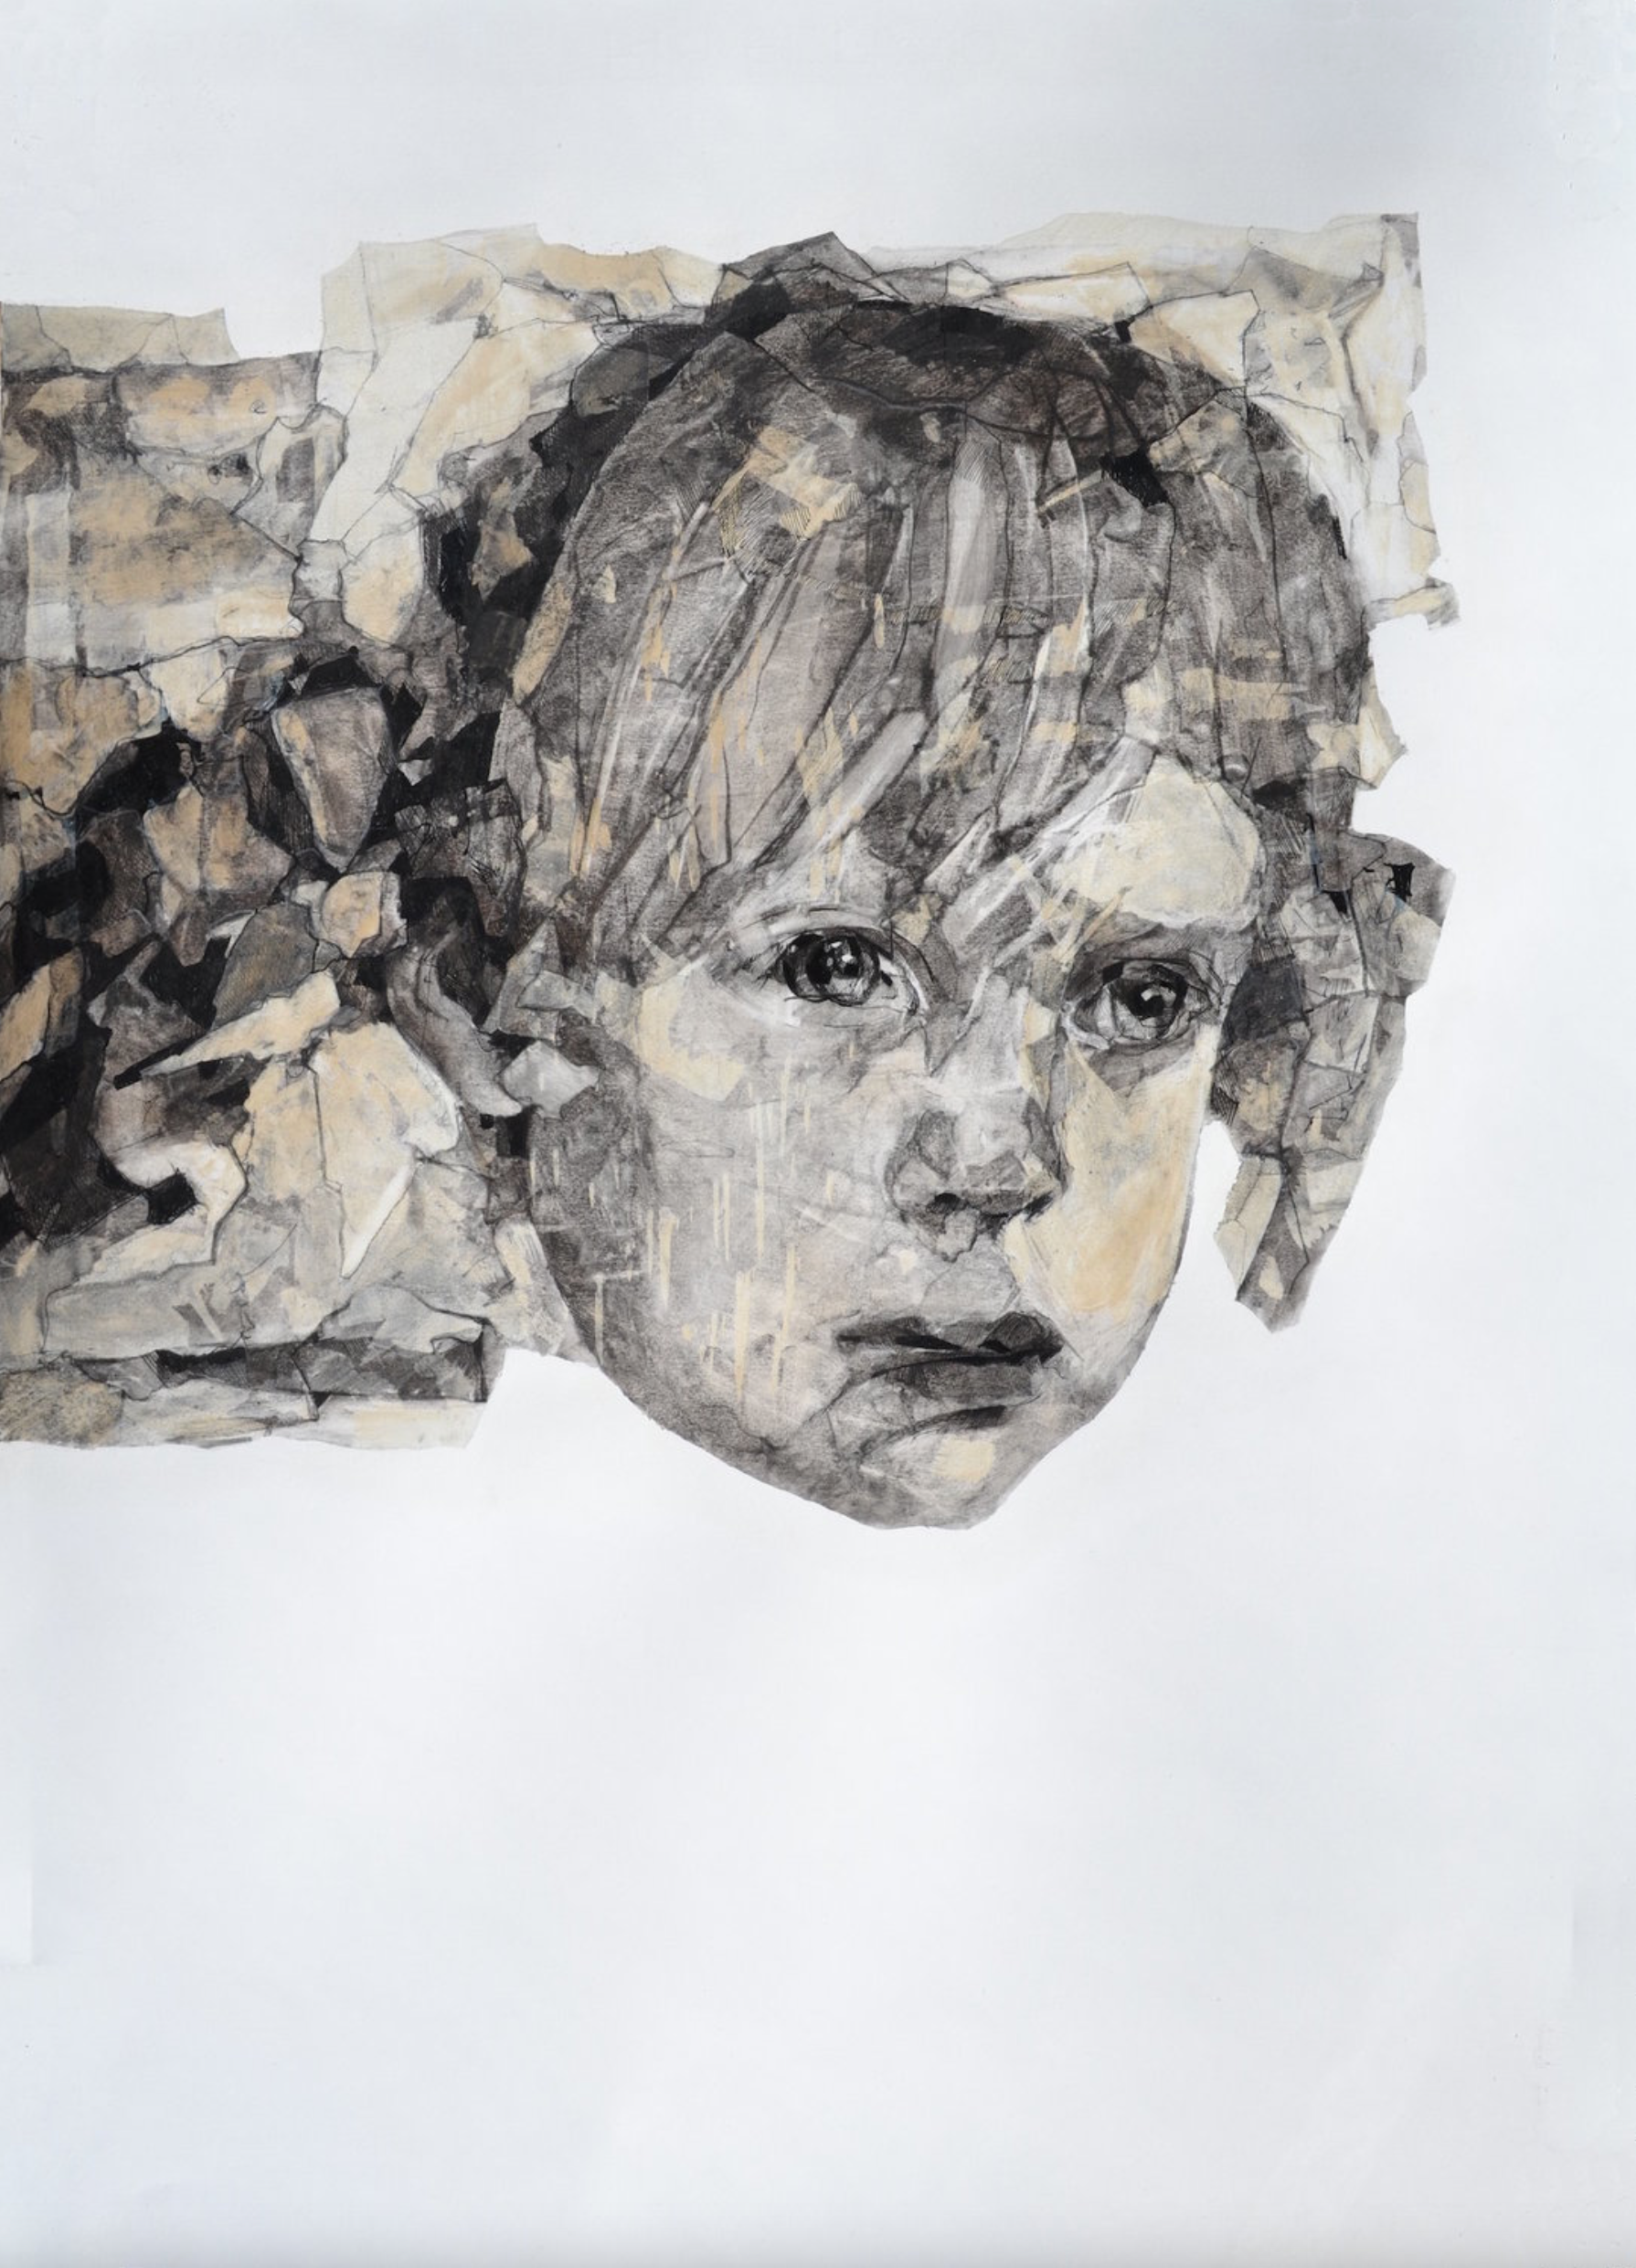 Melinda Matyas ist eine ungarische Malerin mit Sitz in London. Ihr  Figuratives expressionistisches Gemälde "Child of vision I" ist eine Kohle- und Tuschezeichnung auf Papier.